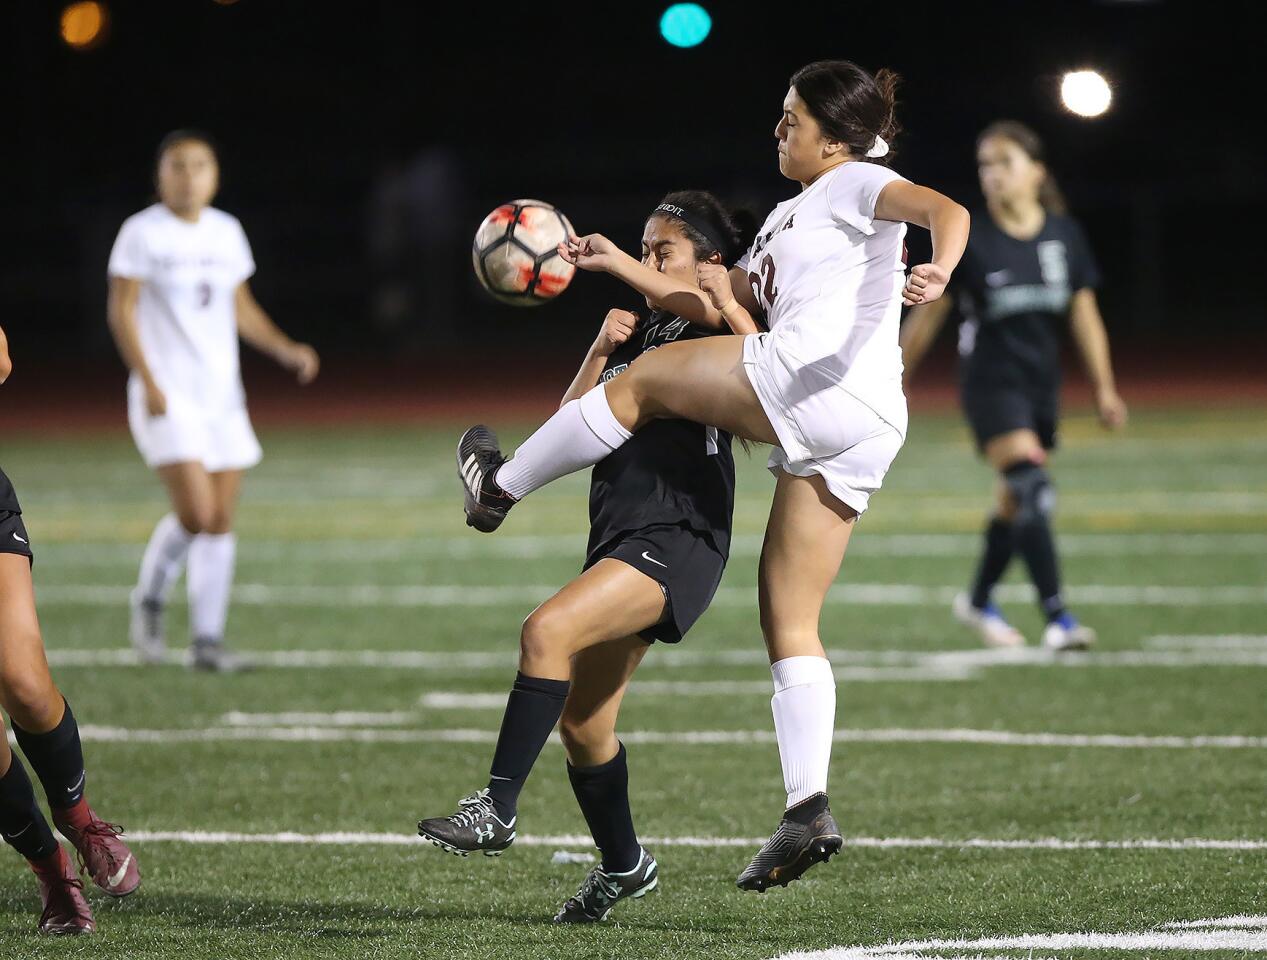 Photo Gallery: Estancia vs. Costa Mesa in girls’ soccer